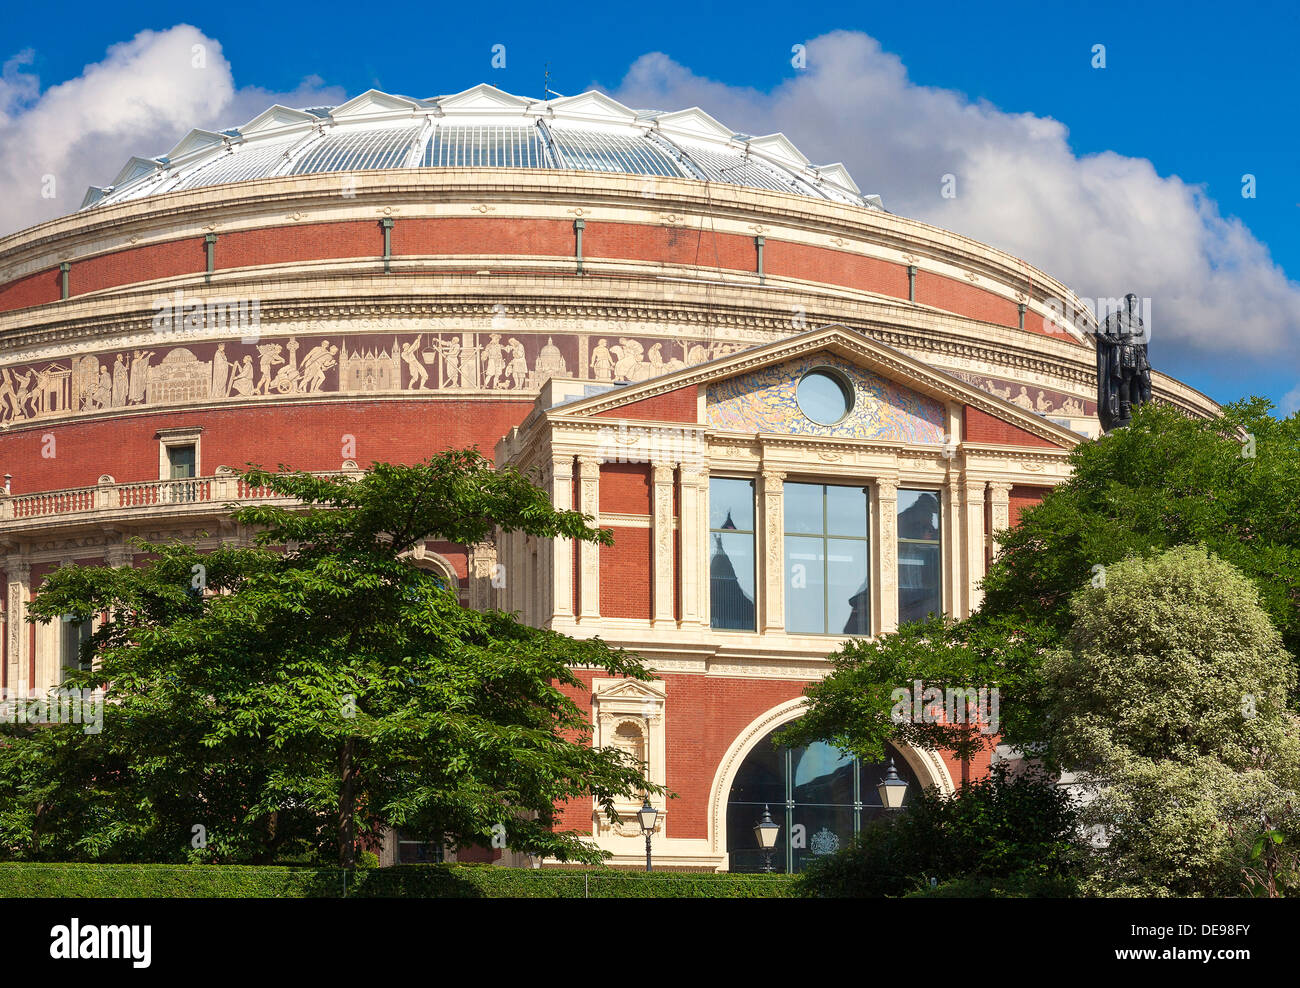 El Royal Albert Hall, Londres, Reino Unido, vista trasera de Prince Consort Road, Foto de stock